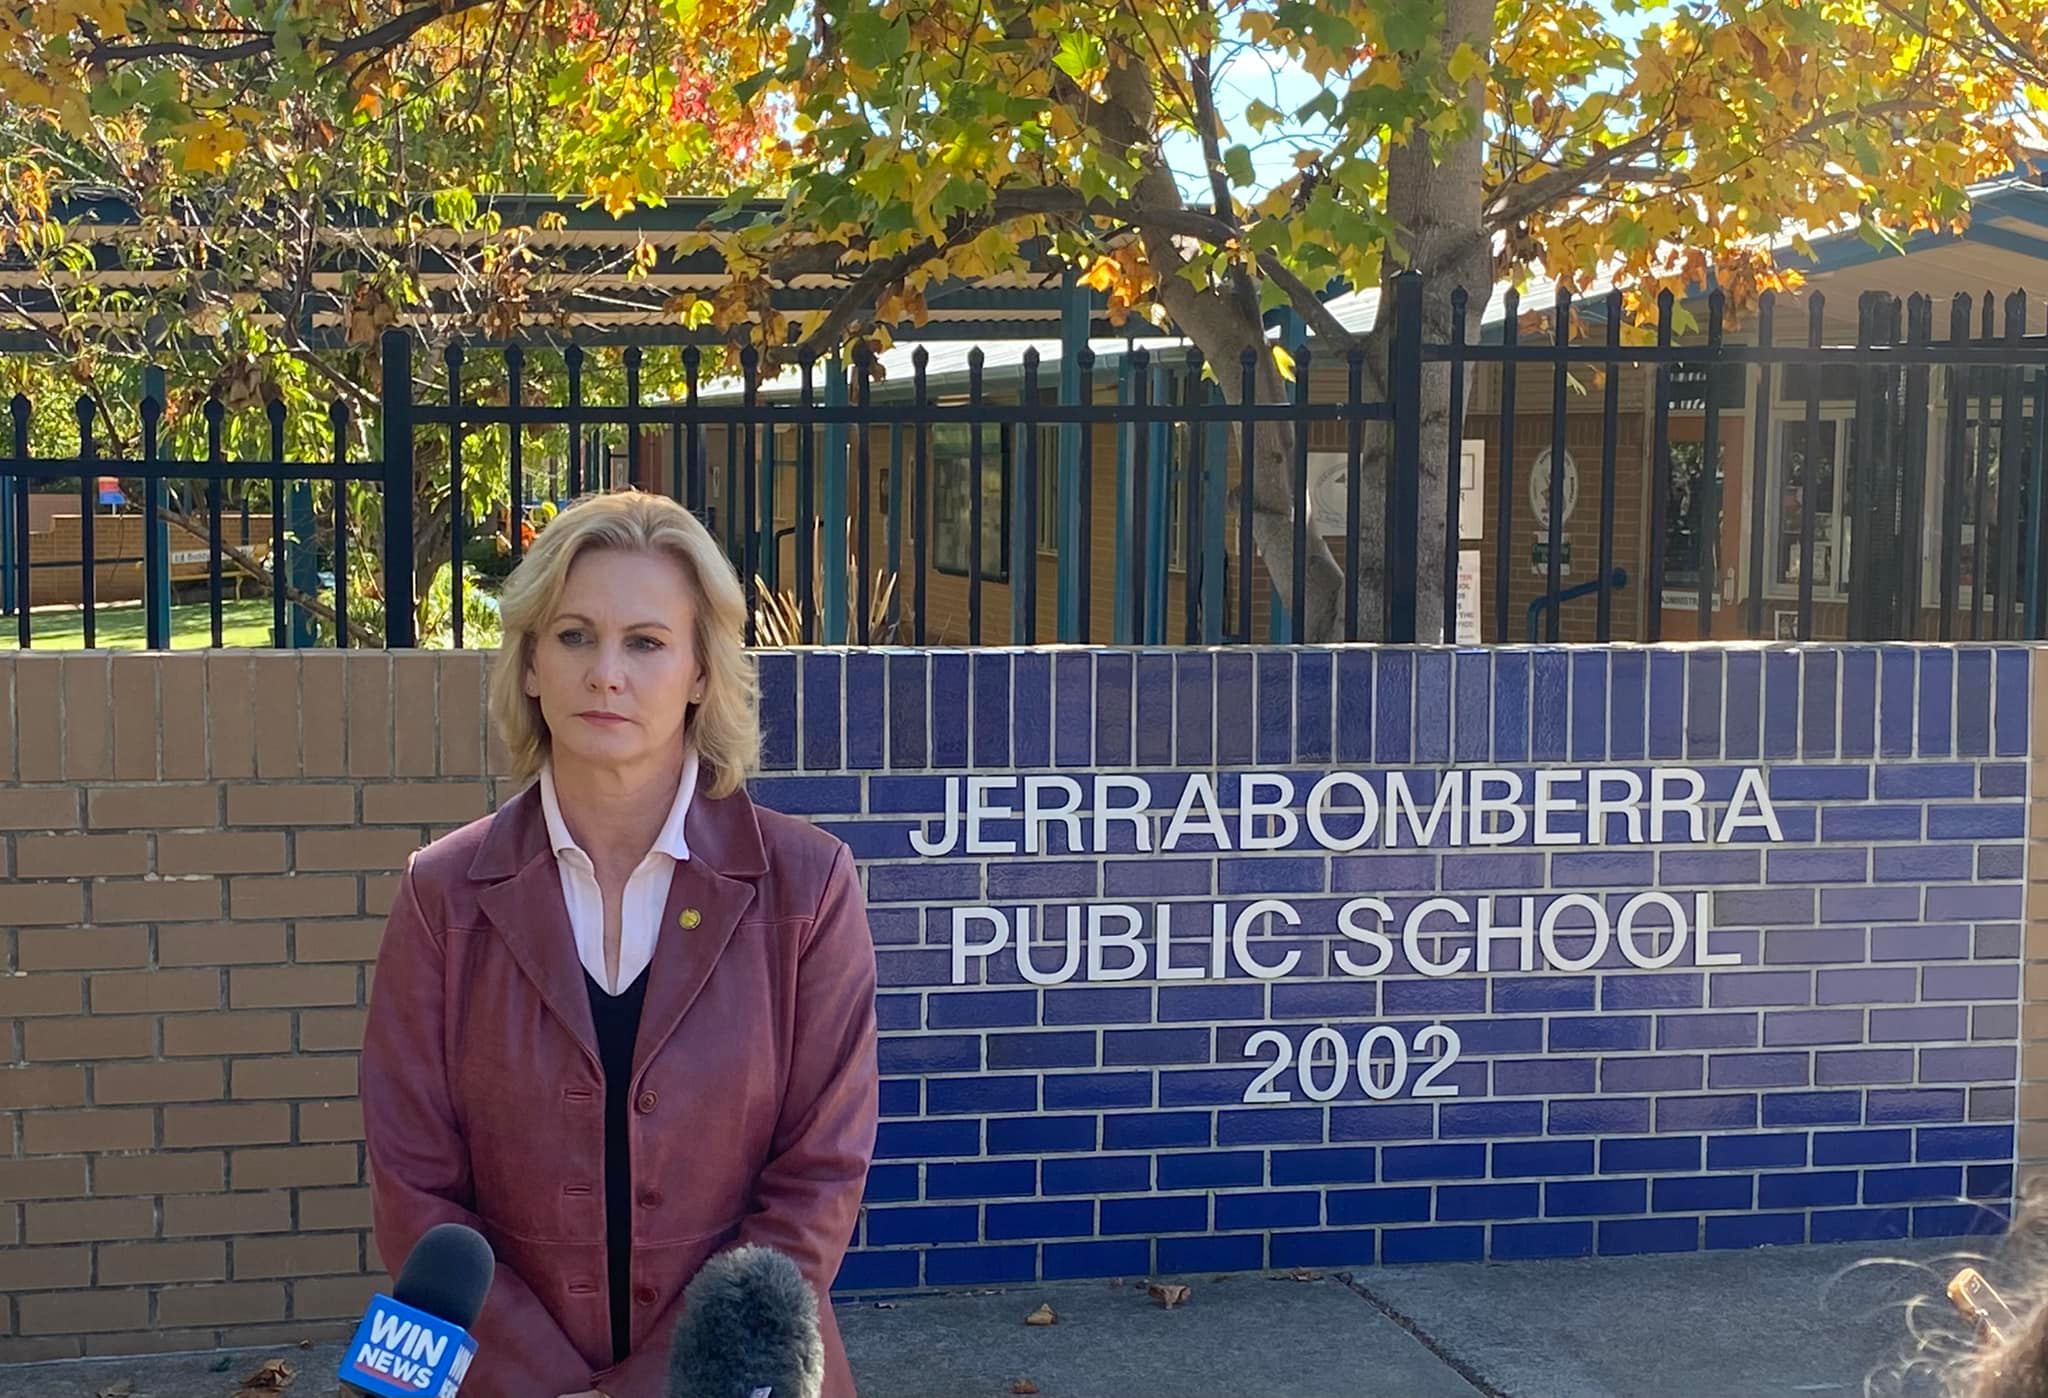 Jerrabomberra Public School's zoning restrictions scrapped